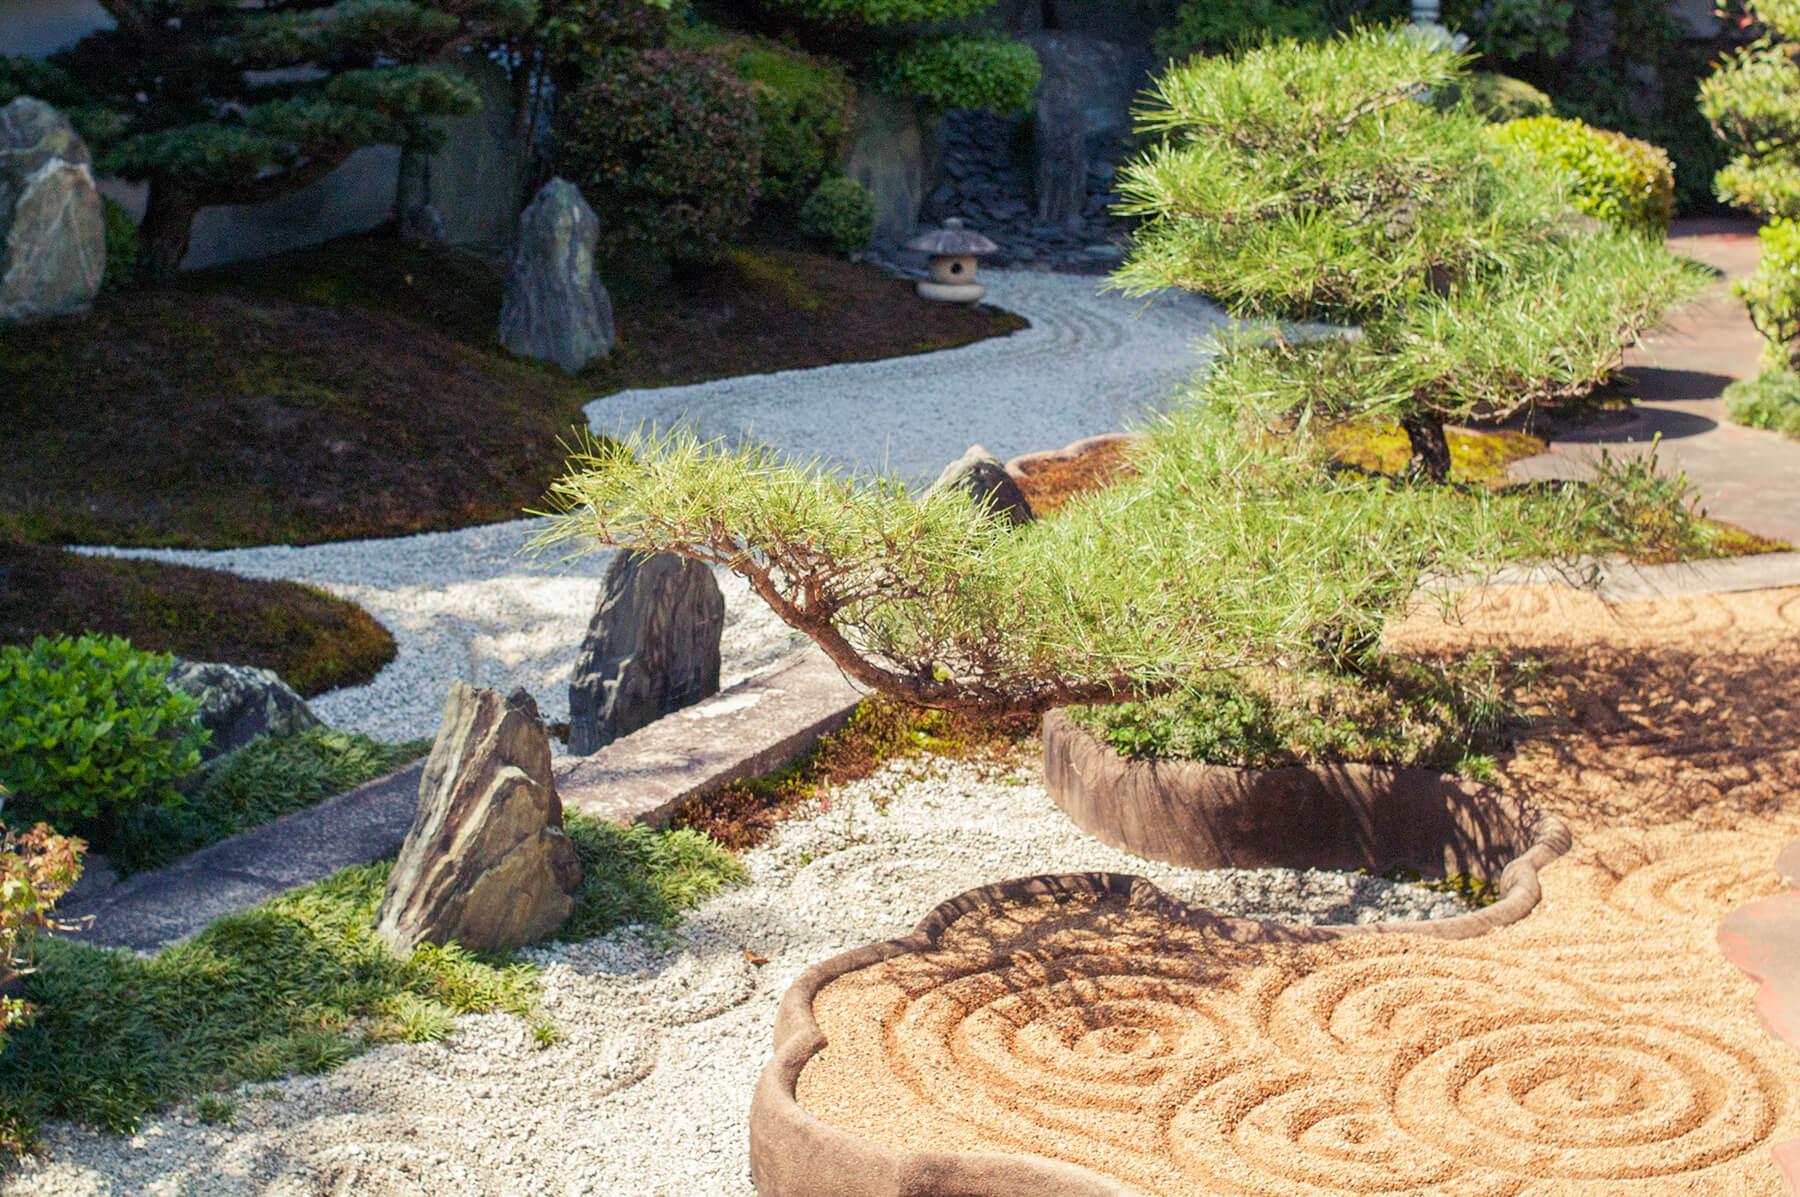 
          京都「東福寺霊雲院」の庭園写真2
      